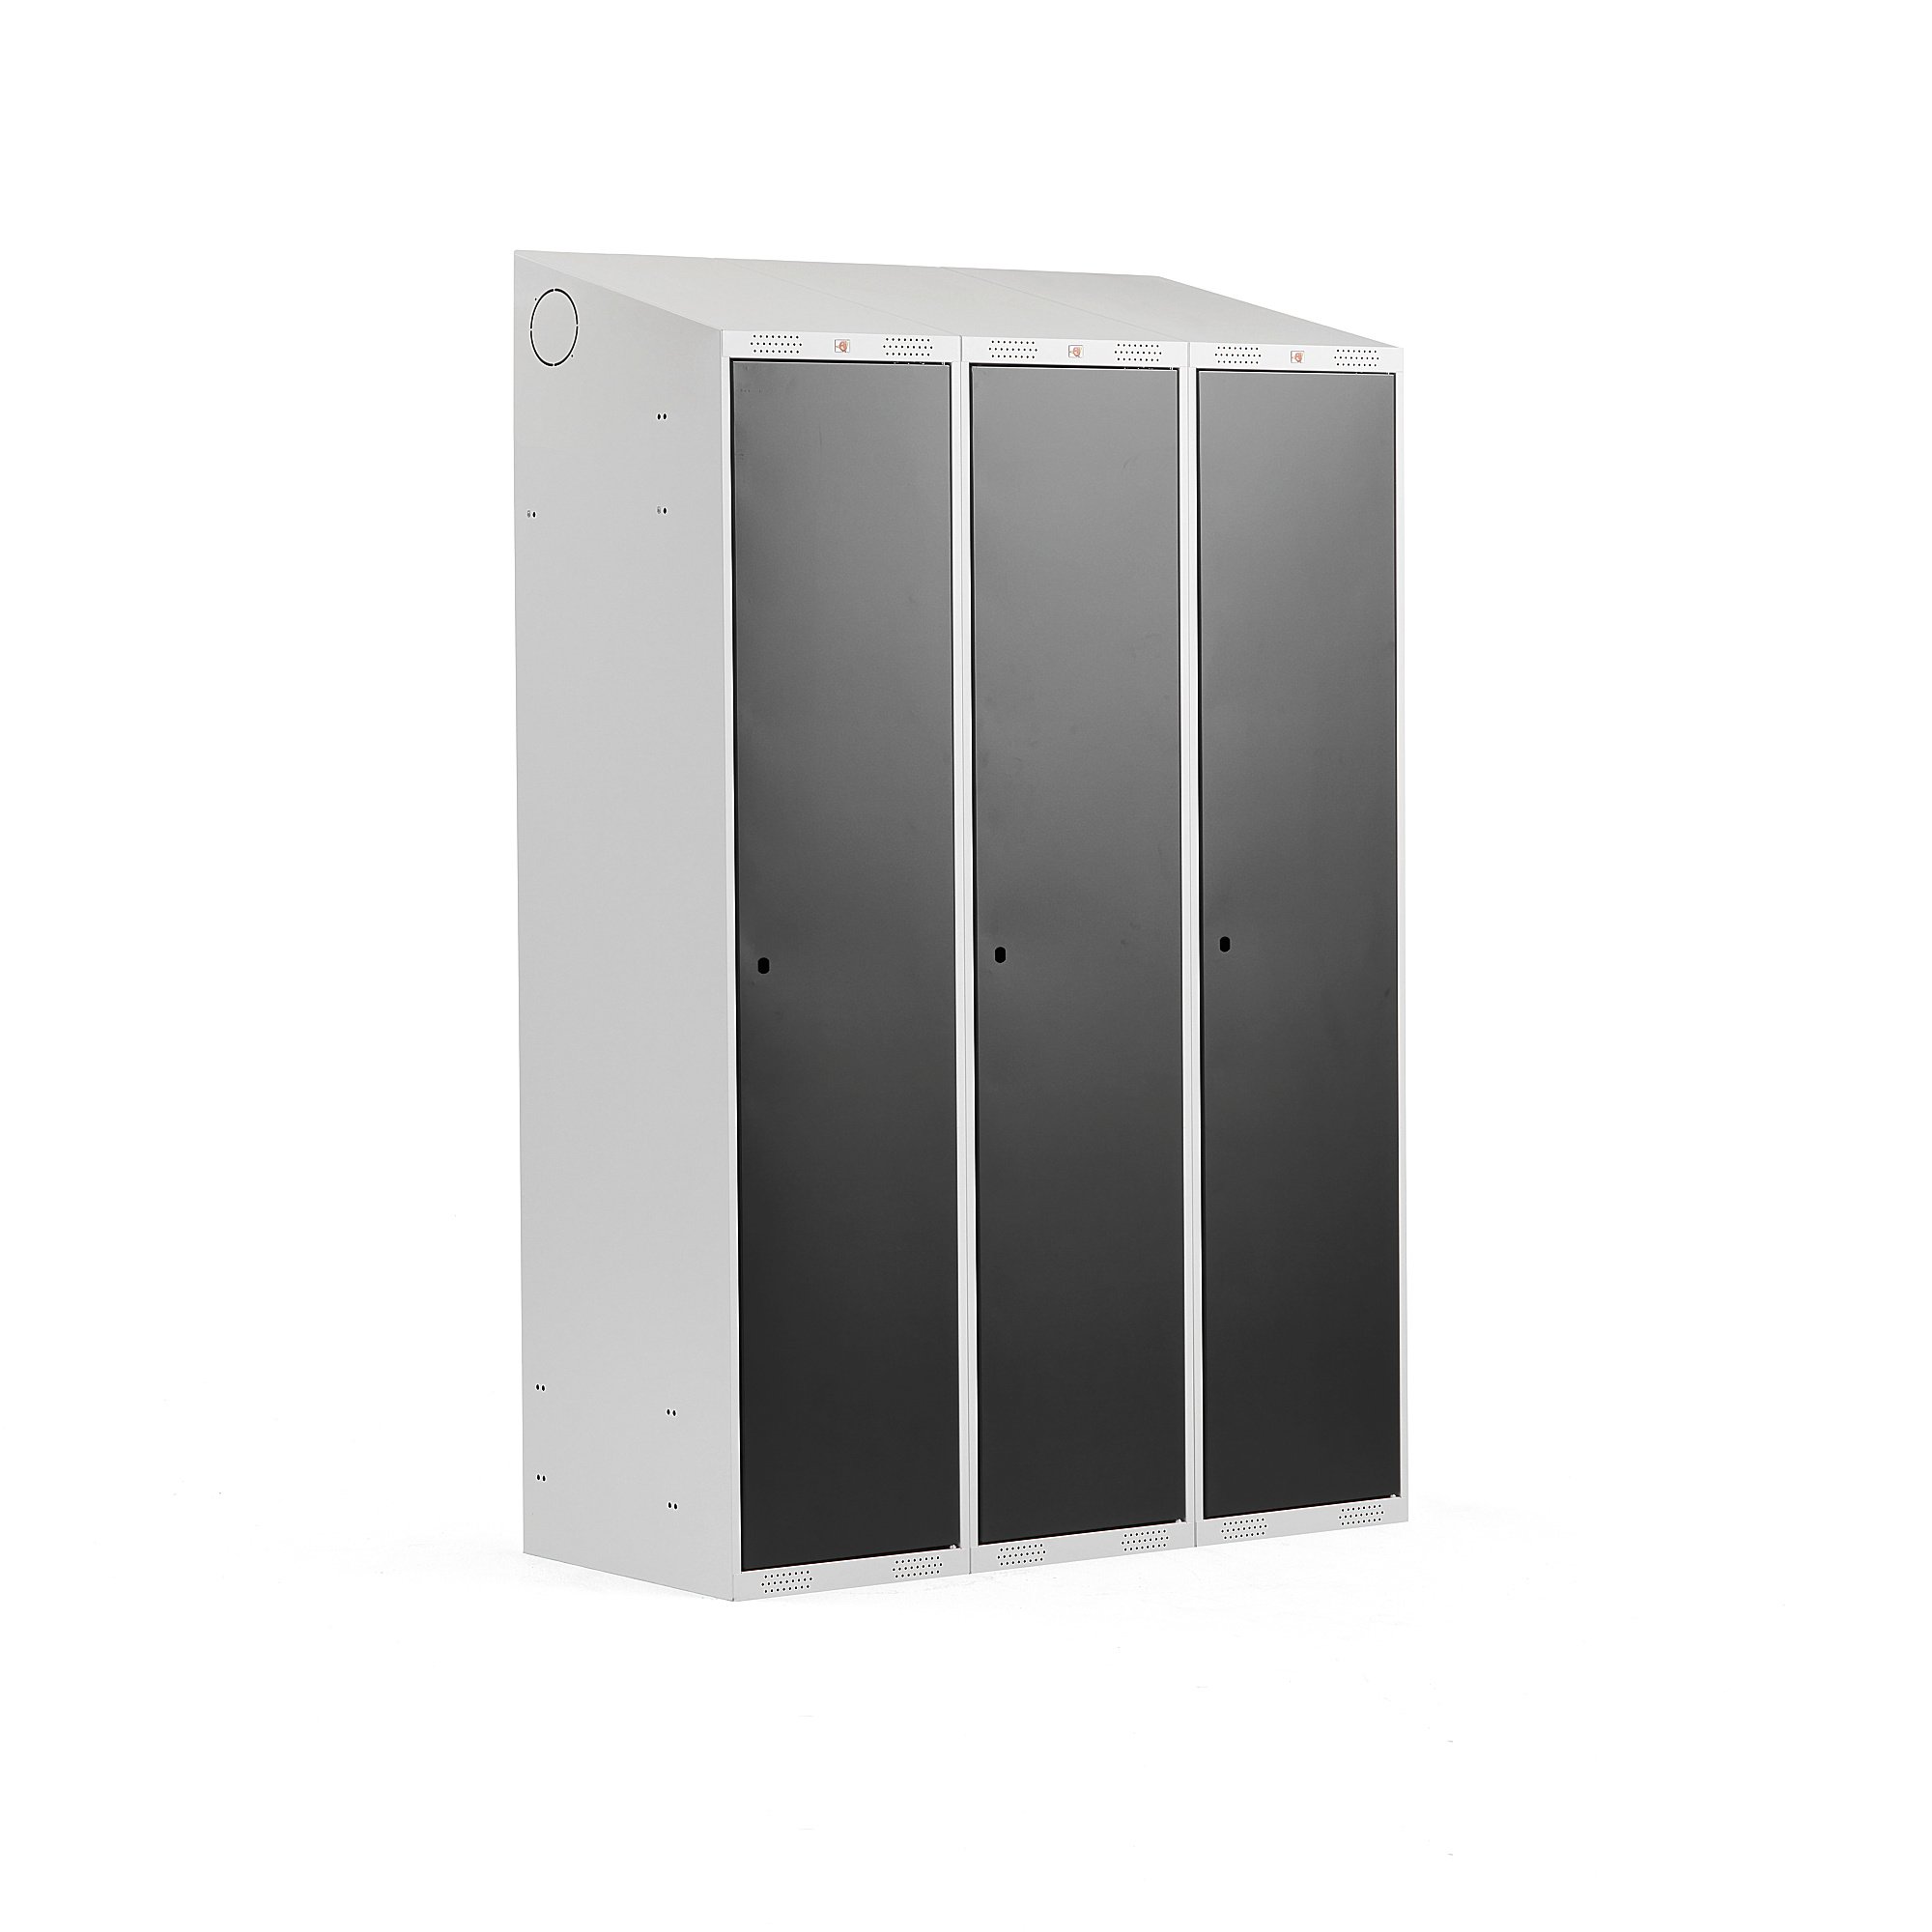 Šatní skříňka CLASSIC, šikmá střecha, 3 sekce, 1900x1200x550 mm, šedá, černé dveře